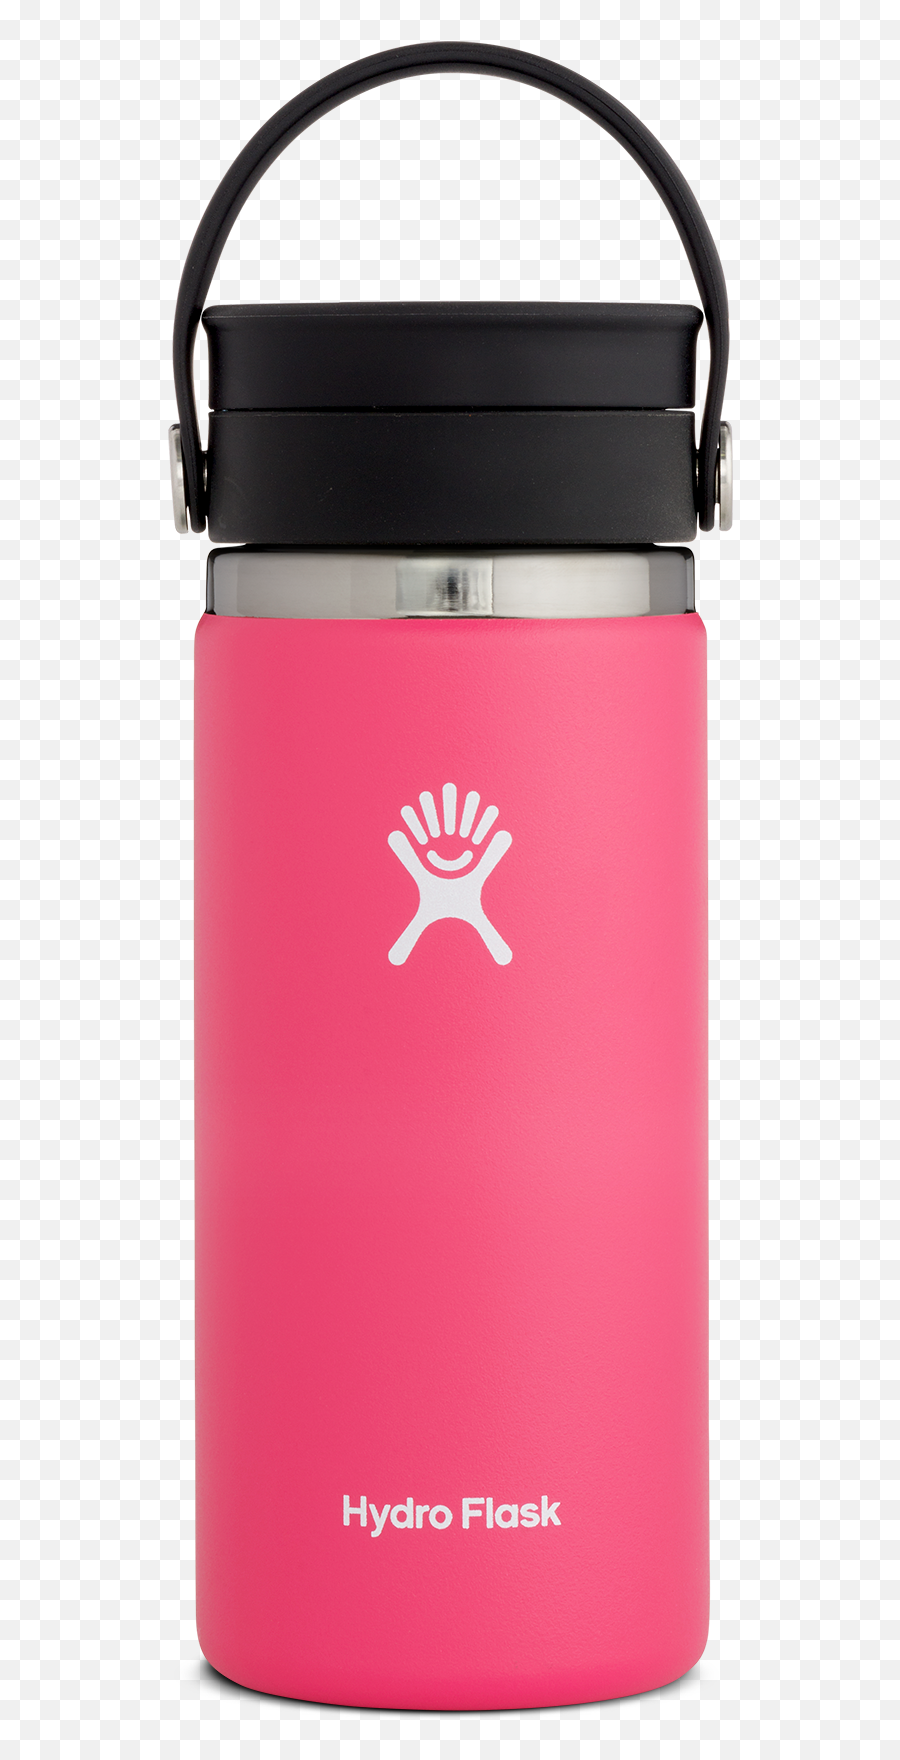 Hydroflask - Hydro Flask Coffee With Flex Sip Lid Emoji,Hydro Flask Logo